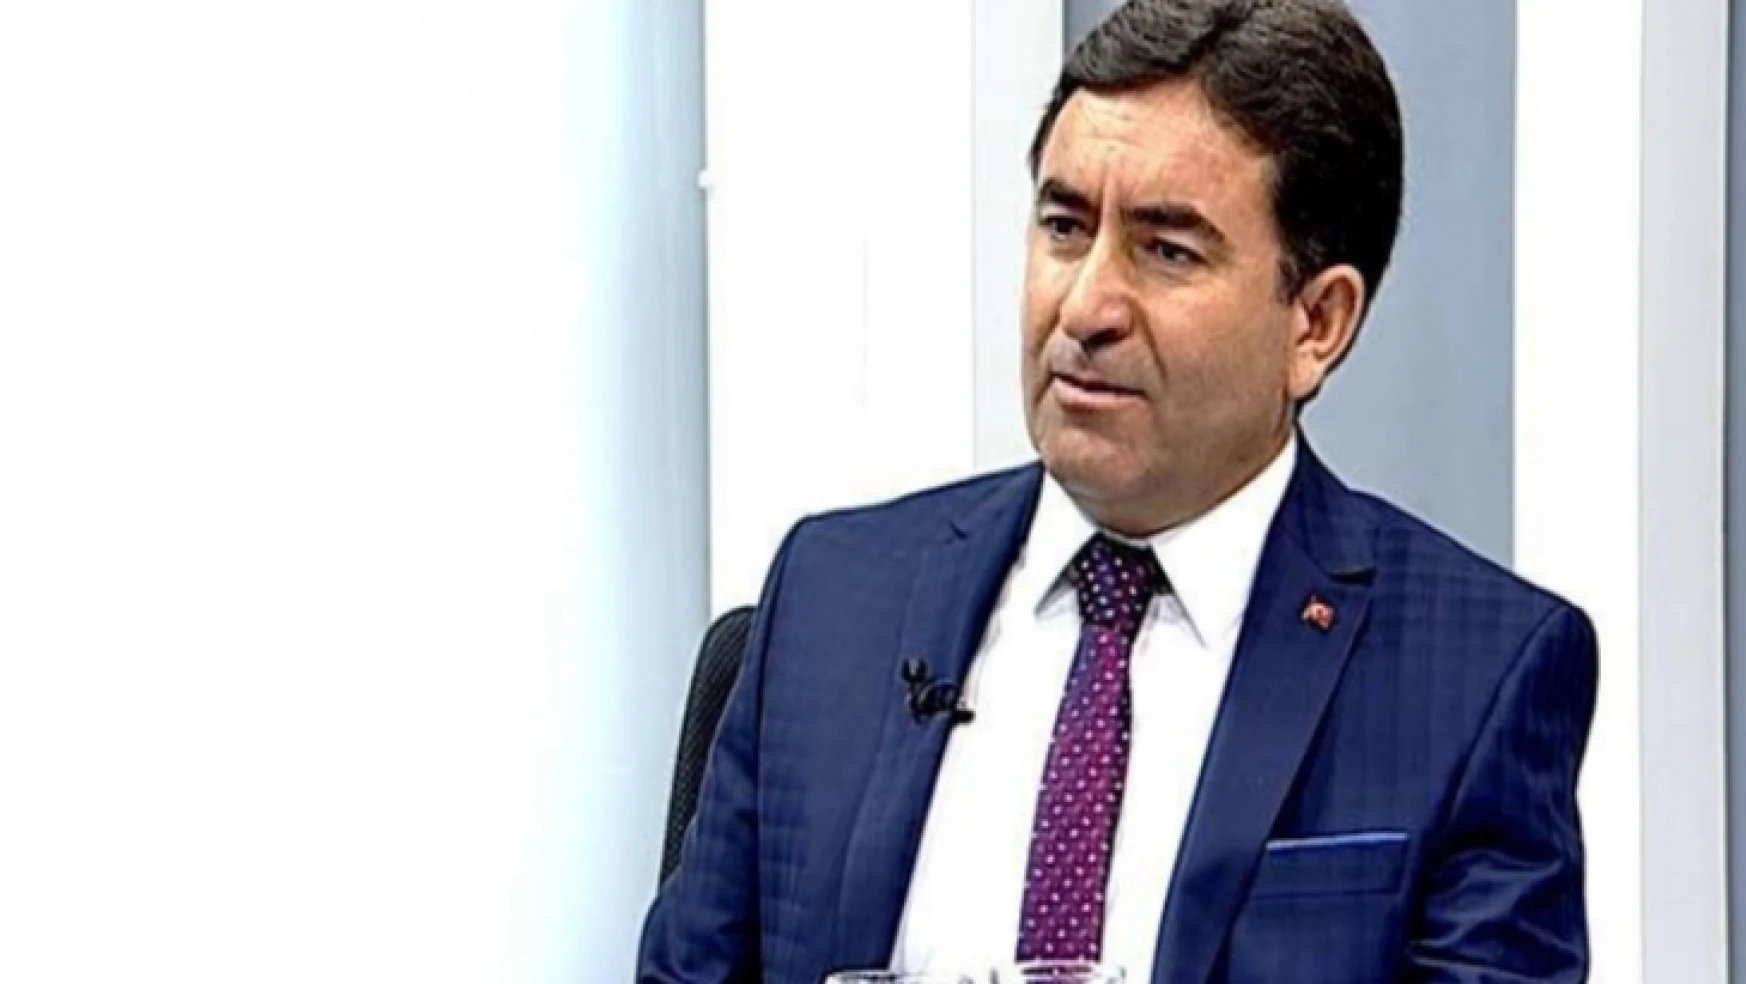 Babahanoğlu:  Hep Derik'in terörle anılmamasını istemişti